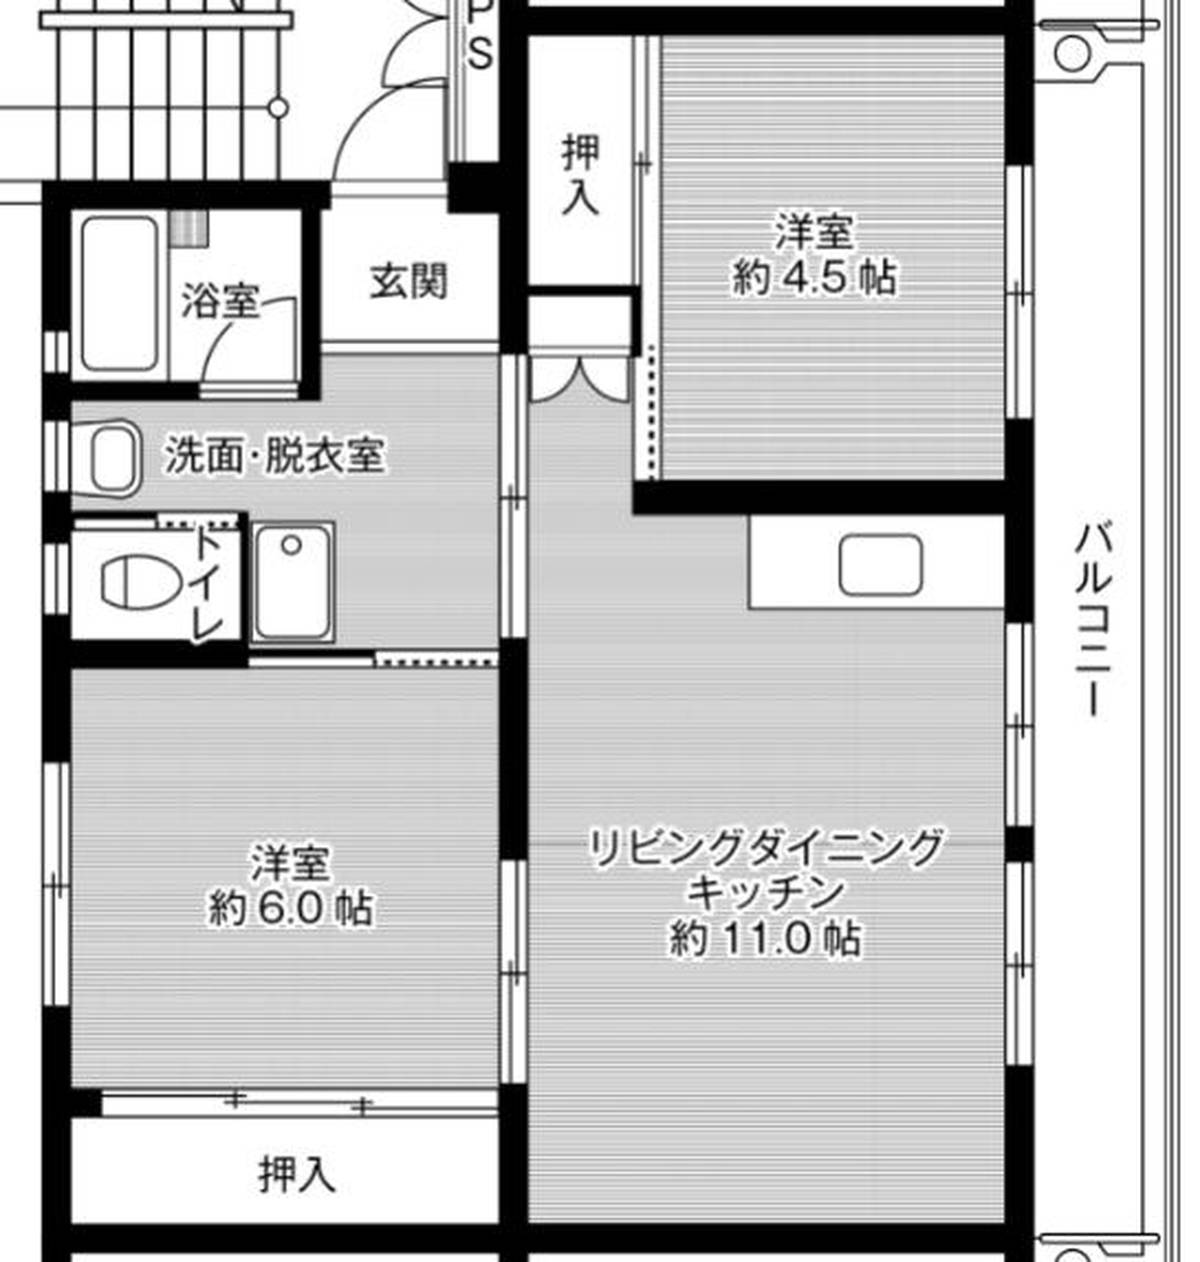 Sơ đồ phòng 2LDK của Village House Ueki ở Kita-ku